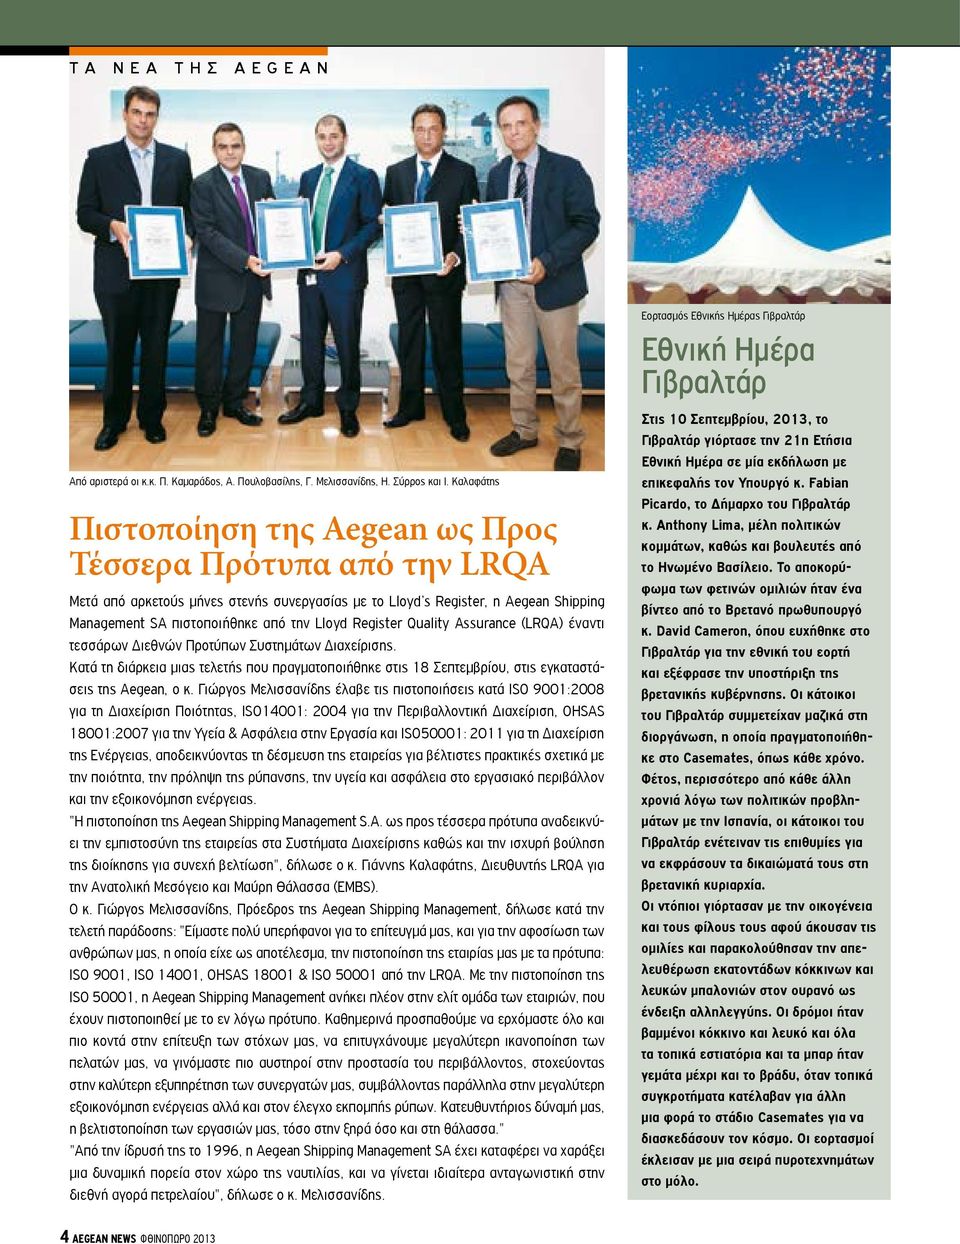 Register Quality Assurance (LRQA) έναντι τεσσάρων Διεθνών Προτύπων Συστημάτων Διαχείρισης. Κατά τη διάρκεια μιας τελετής που πραγματοποιήθηκε στις 18 Σεπτεμβρίου, στις εγκαταστάσεις της Aegean, ο κ.